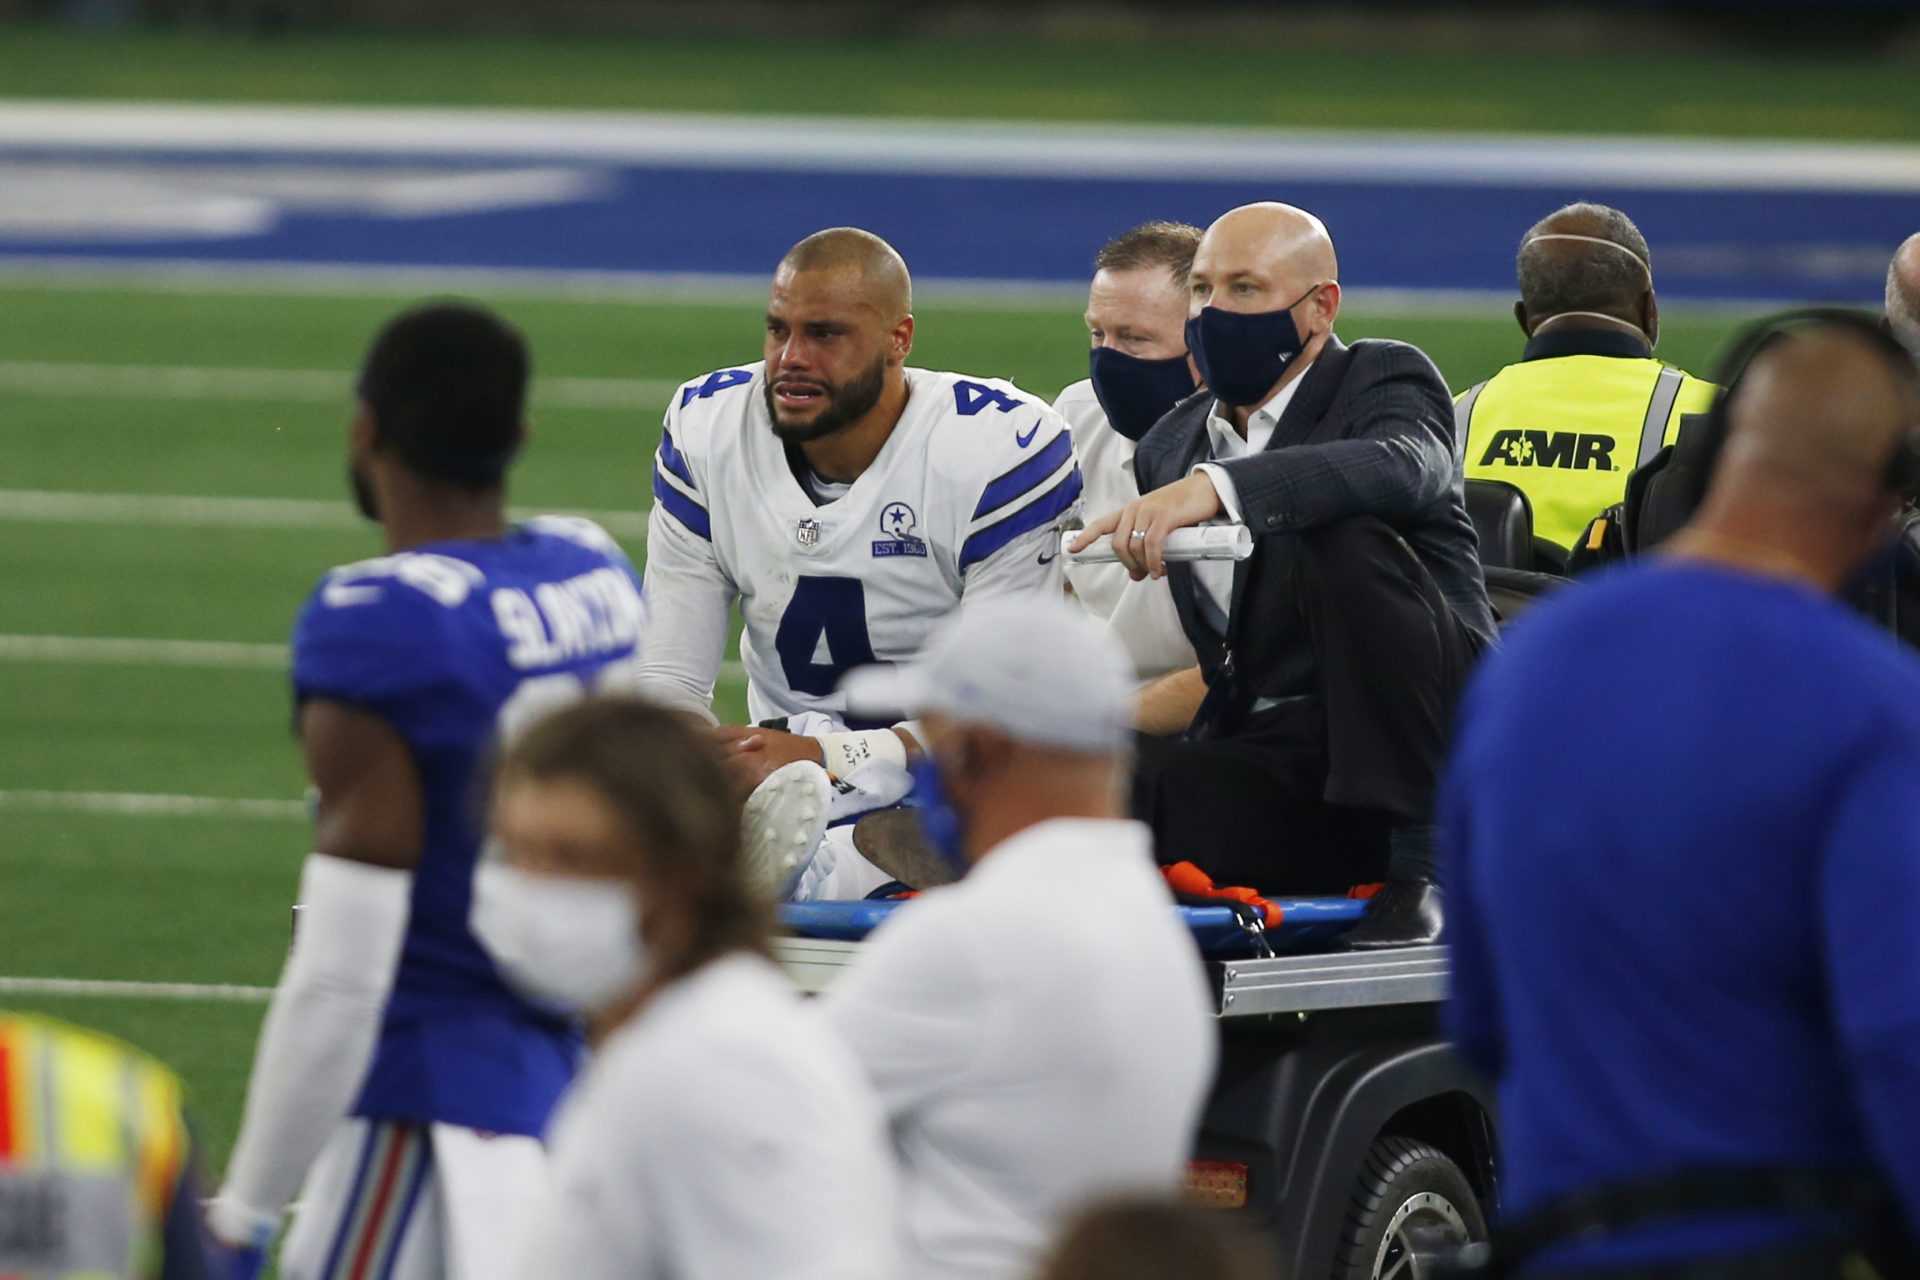 Le quart-arrière des Cowboys de Dallas, Dak Prescott, est parti après avoir subi une fracture de la cheville contre les Giants de New York lors de la cinquième semaine.